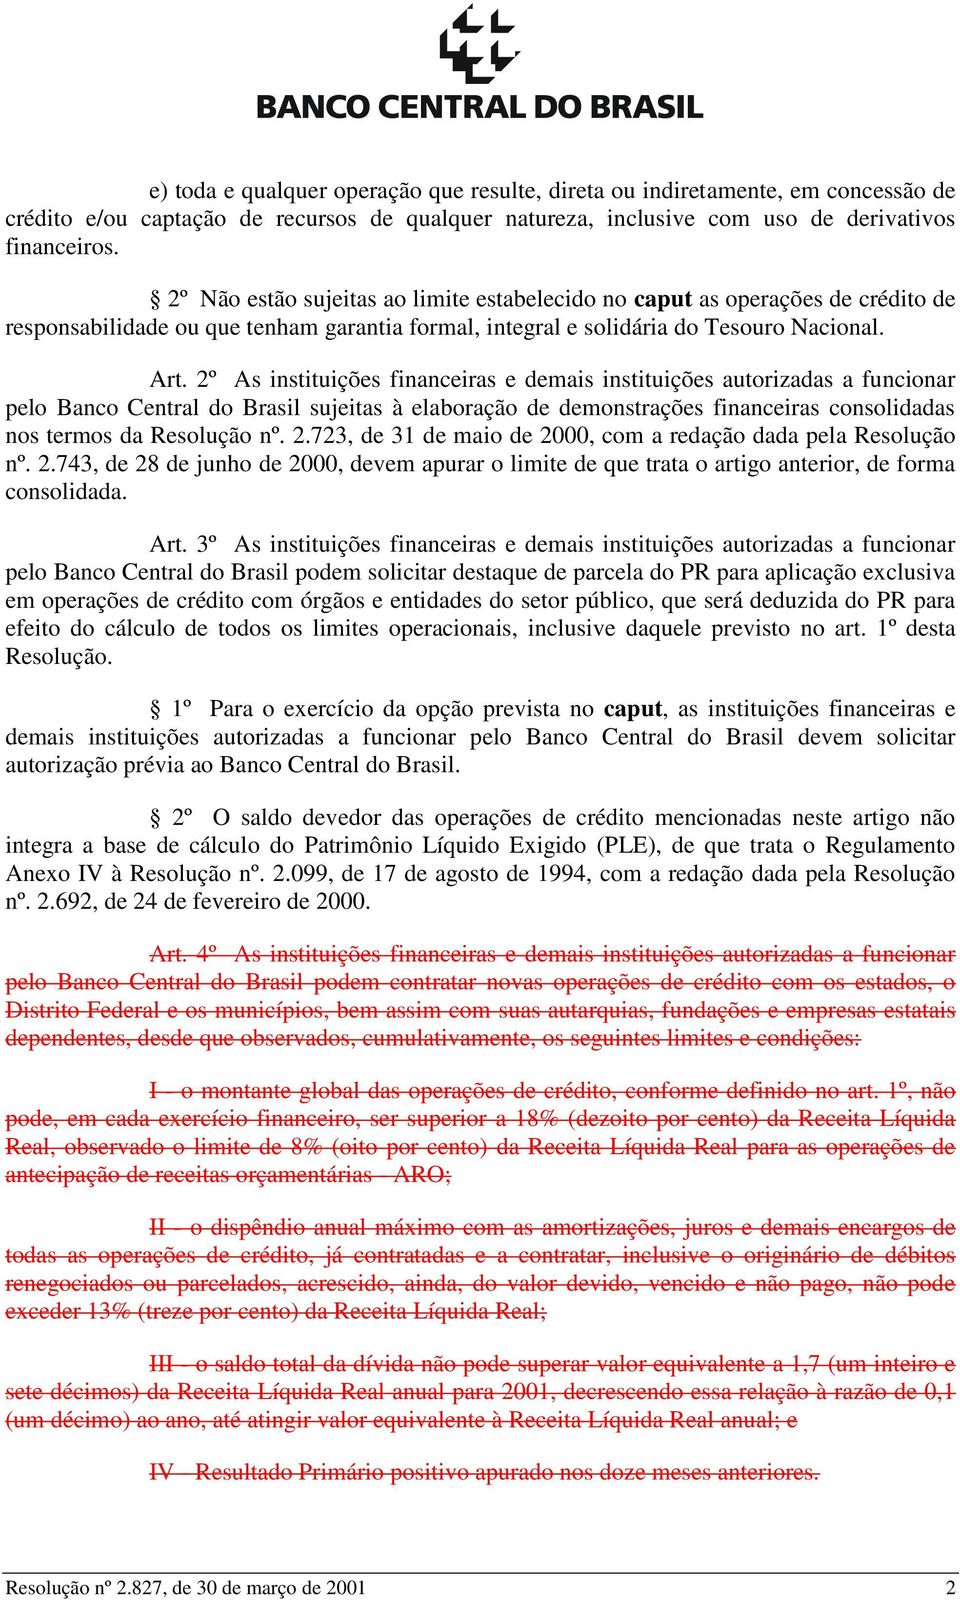 2º As instituições financeiras e demais instituições autorizadas a funcionar pelo Banco Central do Brasil sujeitas à elaboração de demonstrações financeiras consolidadas nos termos da Resolução nº. 2.